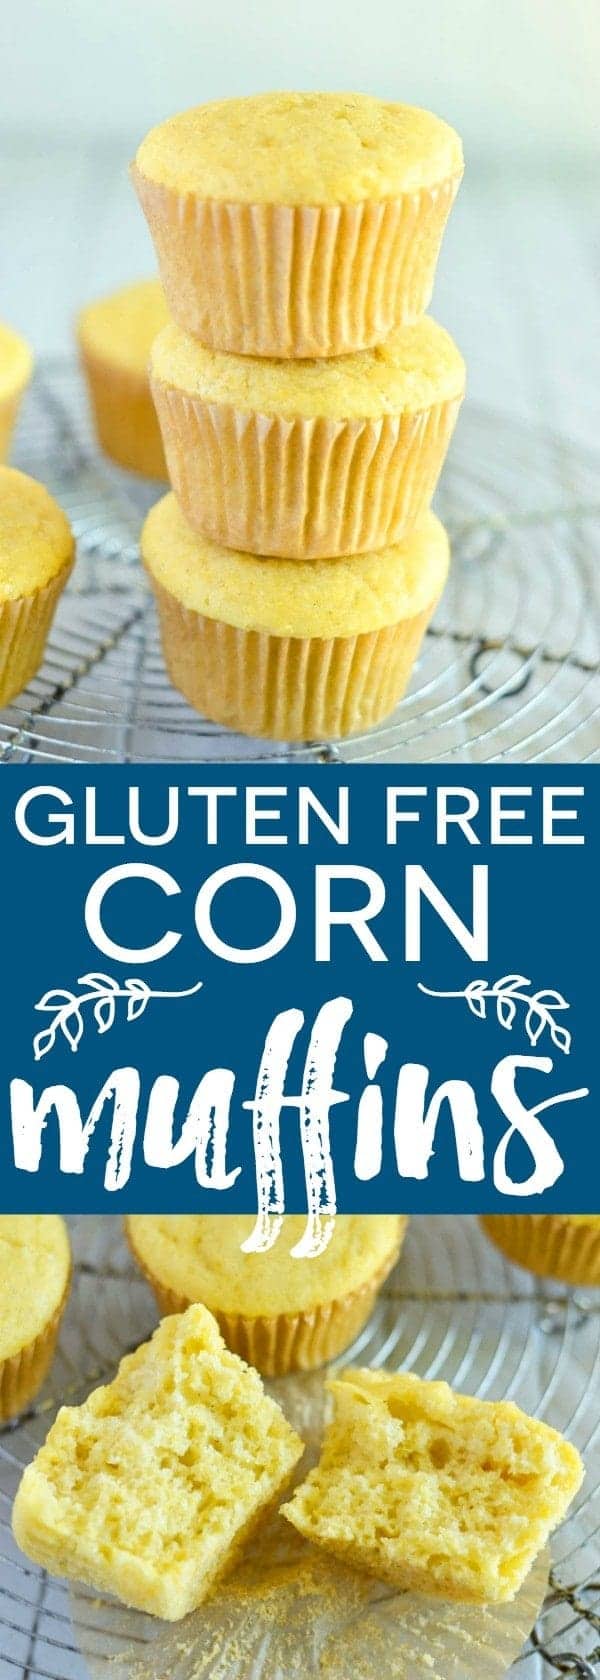 Easy Gluten Free Corn Muffin recipe from @whattheforkblog |gluten free and dairy free | whattheforkfoodblog.com